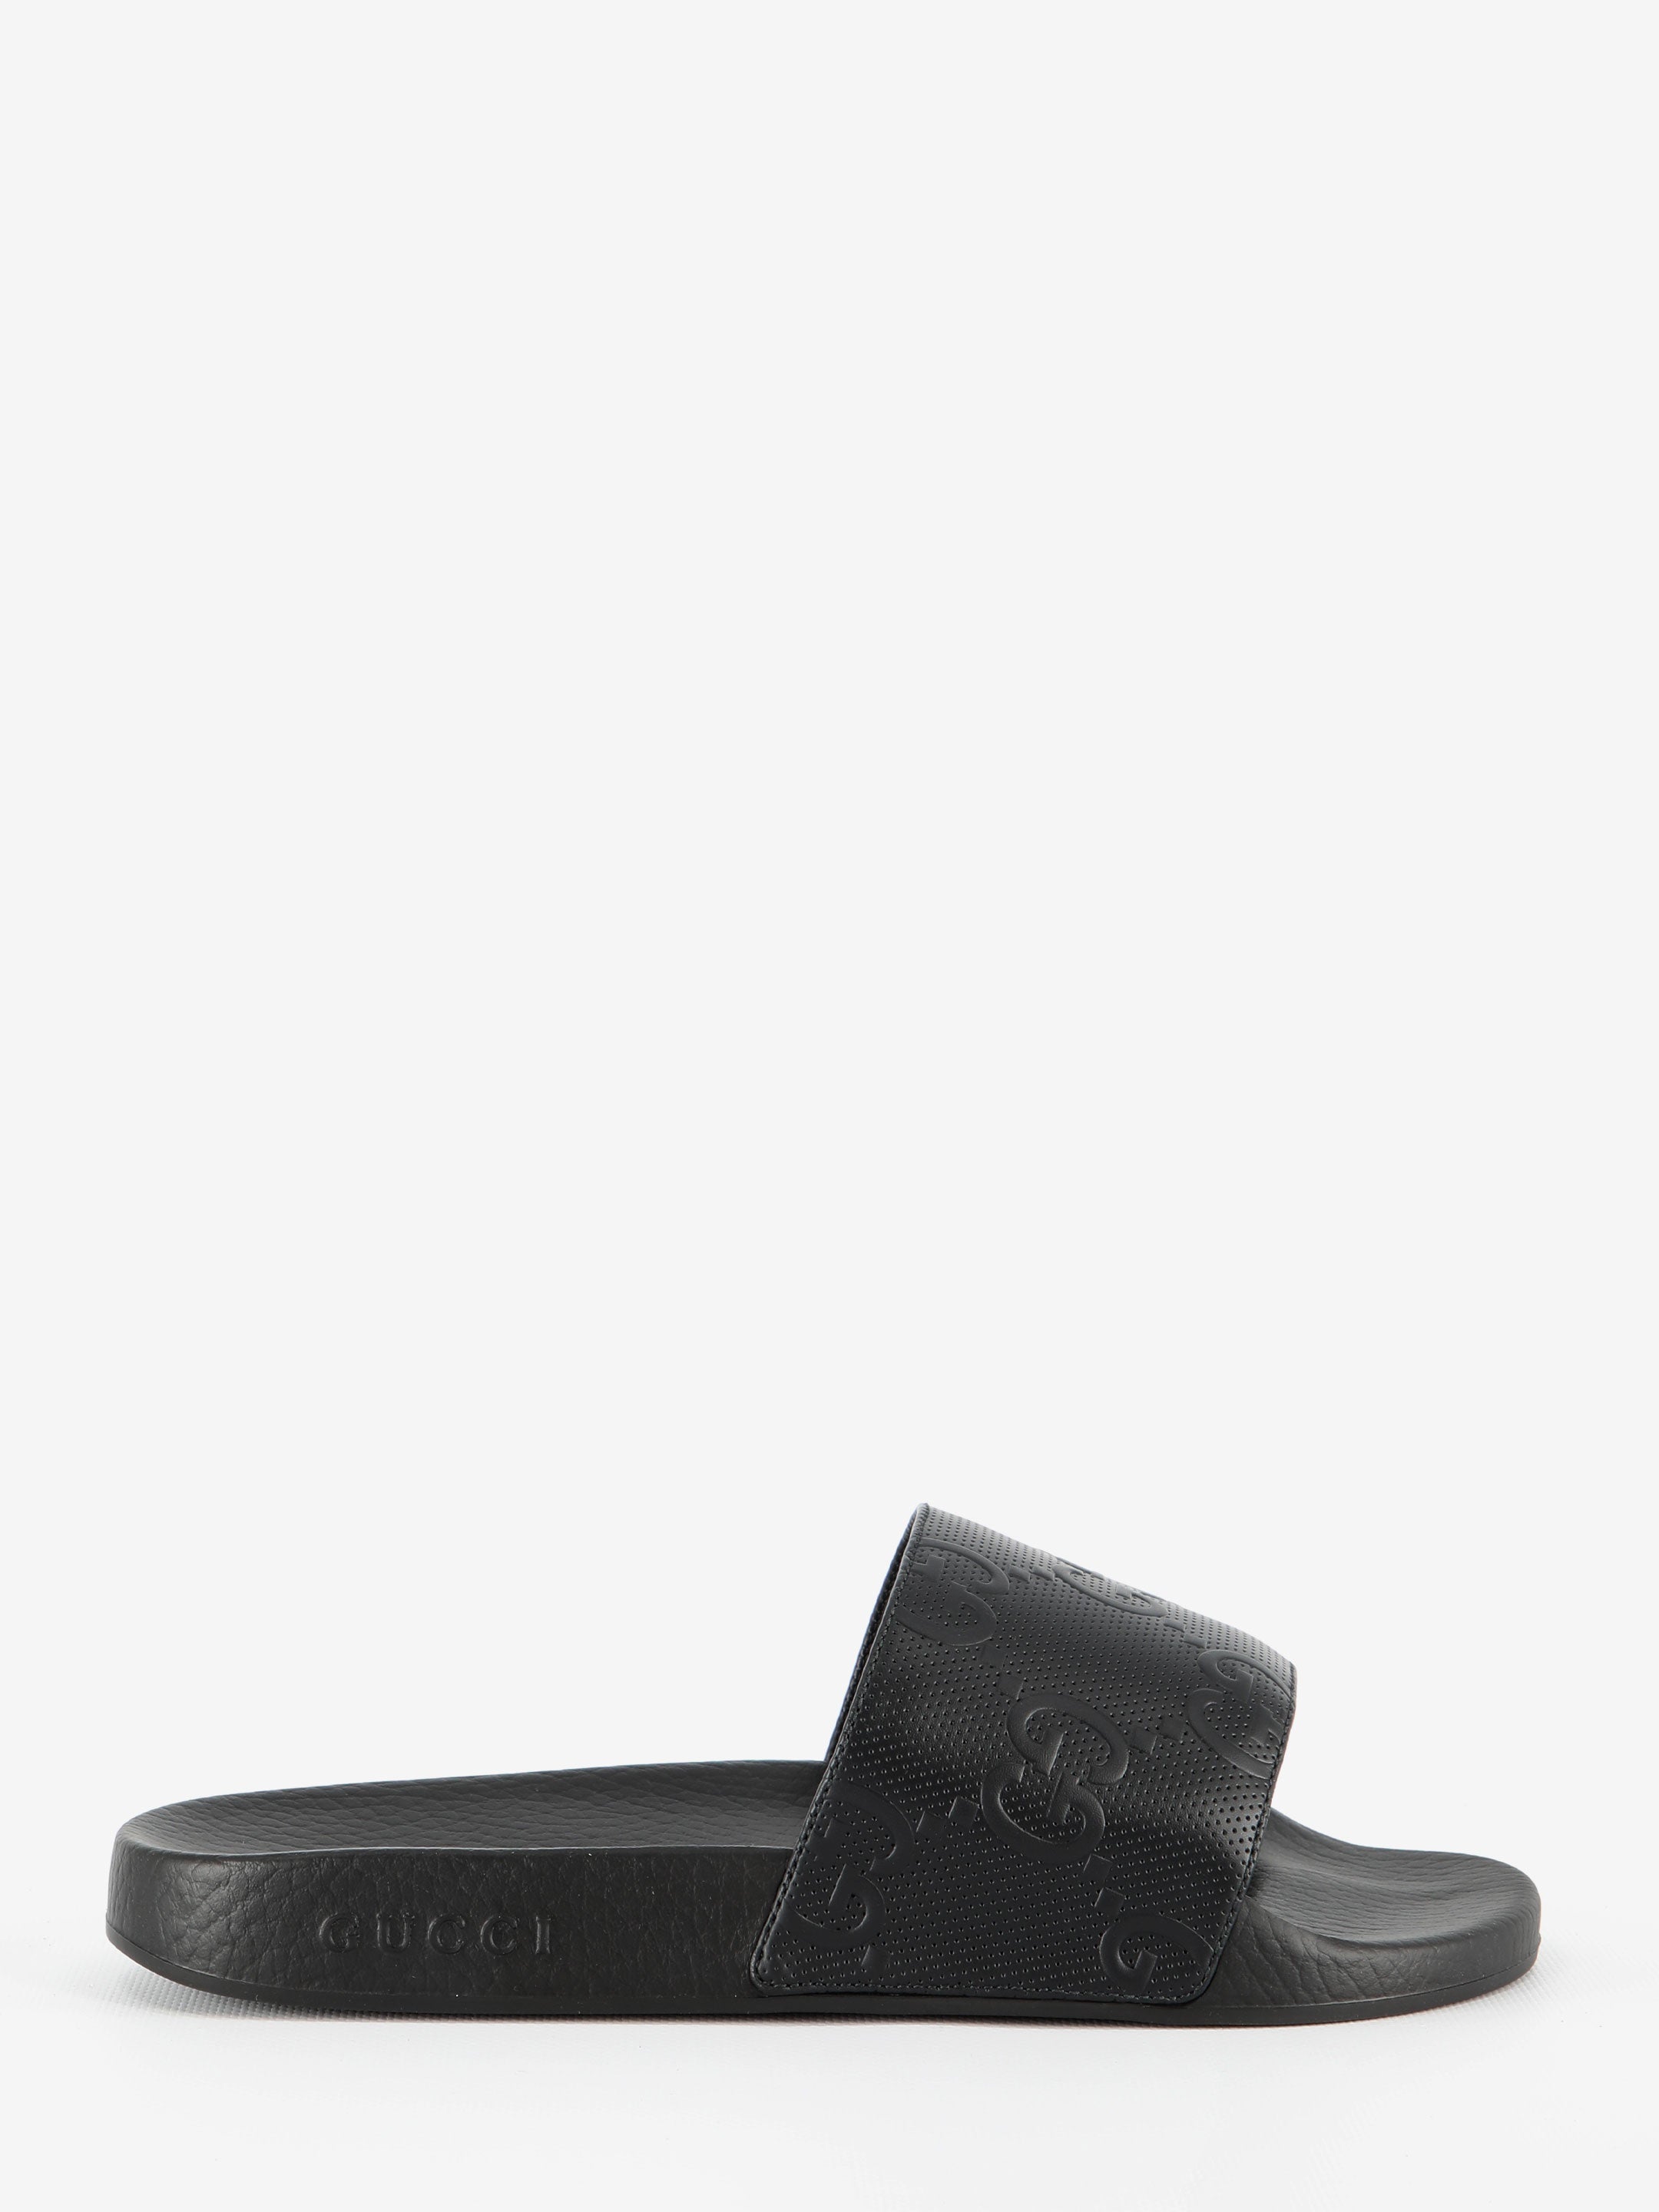 GUCCI-OUTLET-SALE-GG-Slider-sandals-Sandalen-6-BLACK-ARCHIVE-COLLECTION.jpg